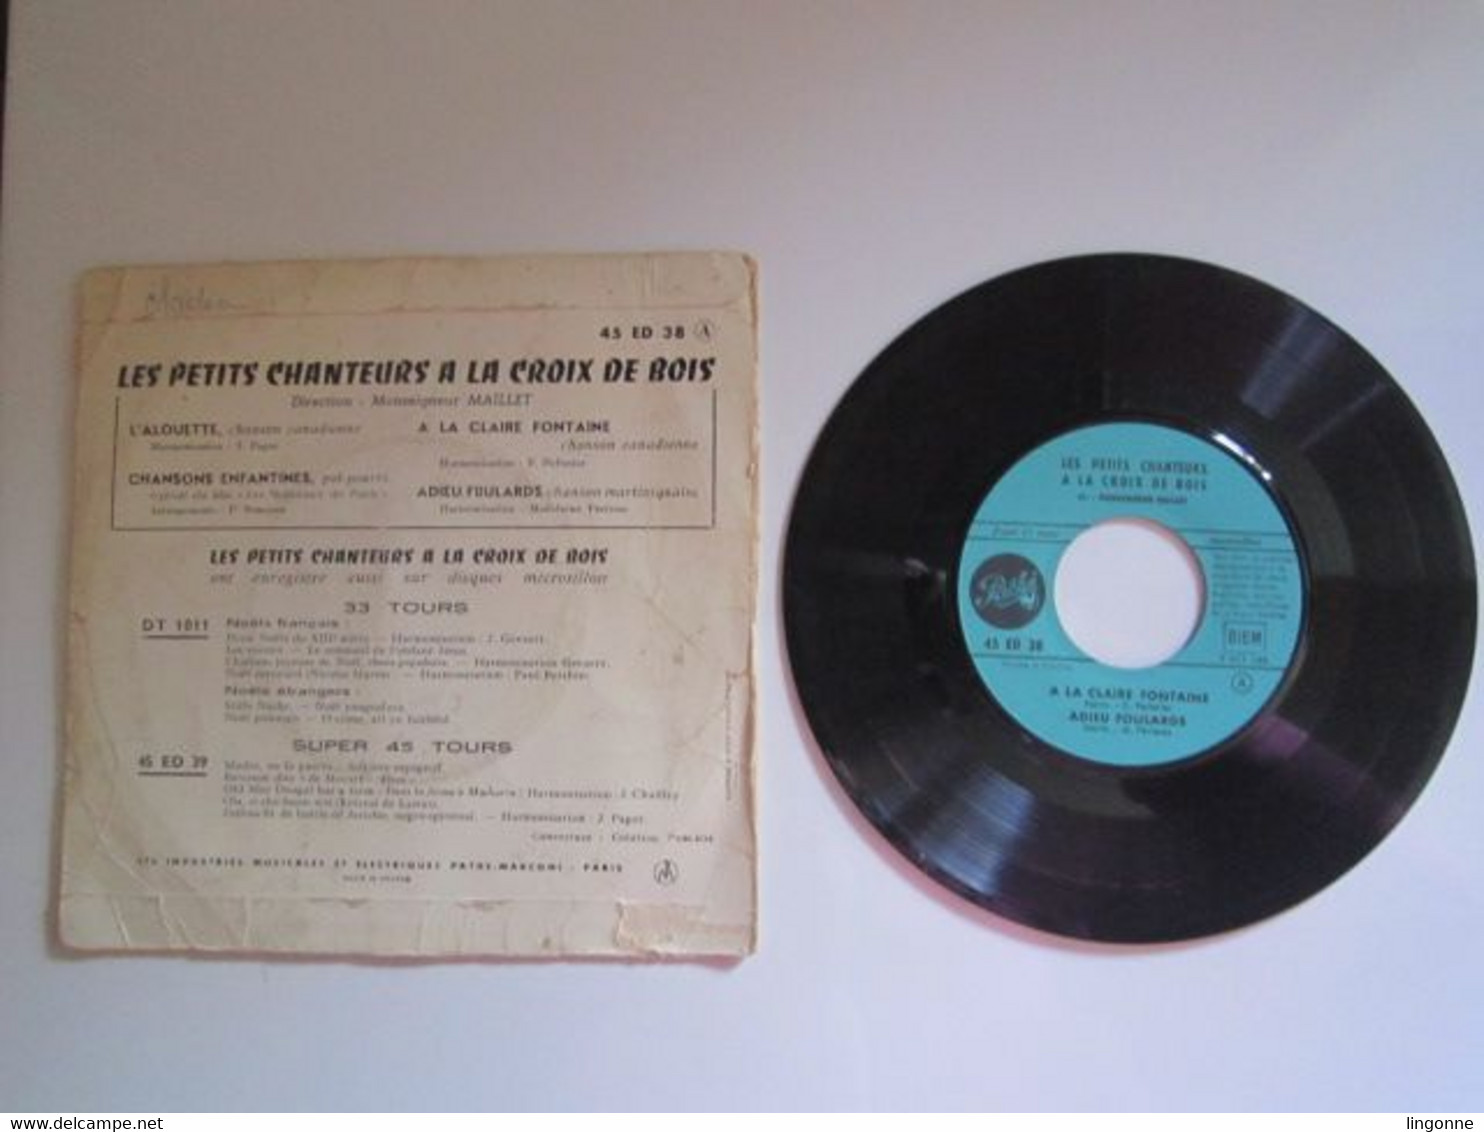 1957 Vinyle 45 Tours Les Petits Chanteurs A La Croix De Bois – L'Alouette - Religion & Gospel